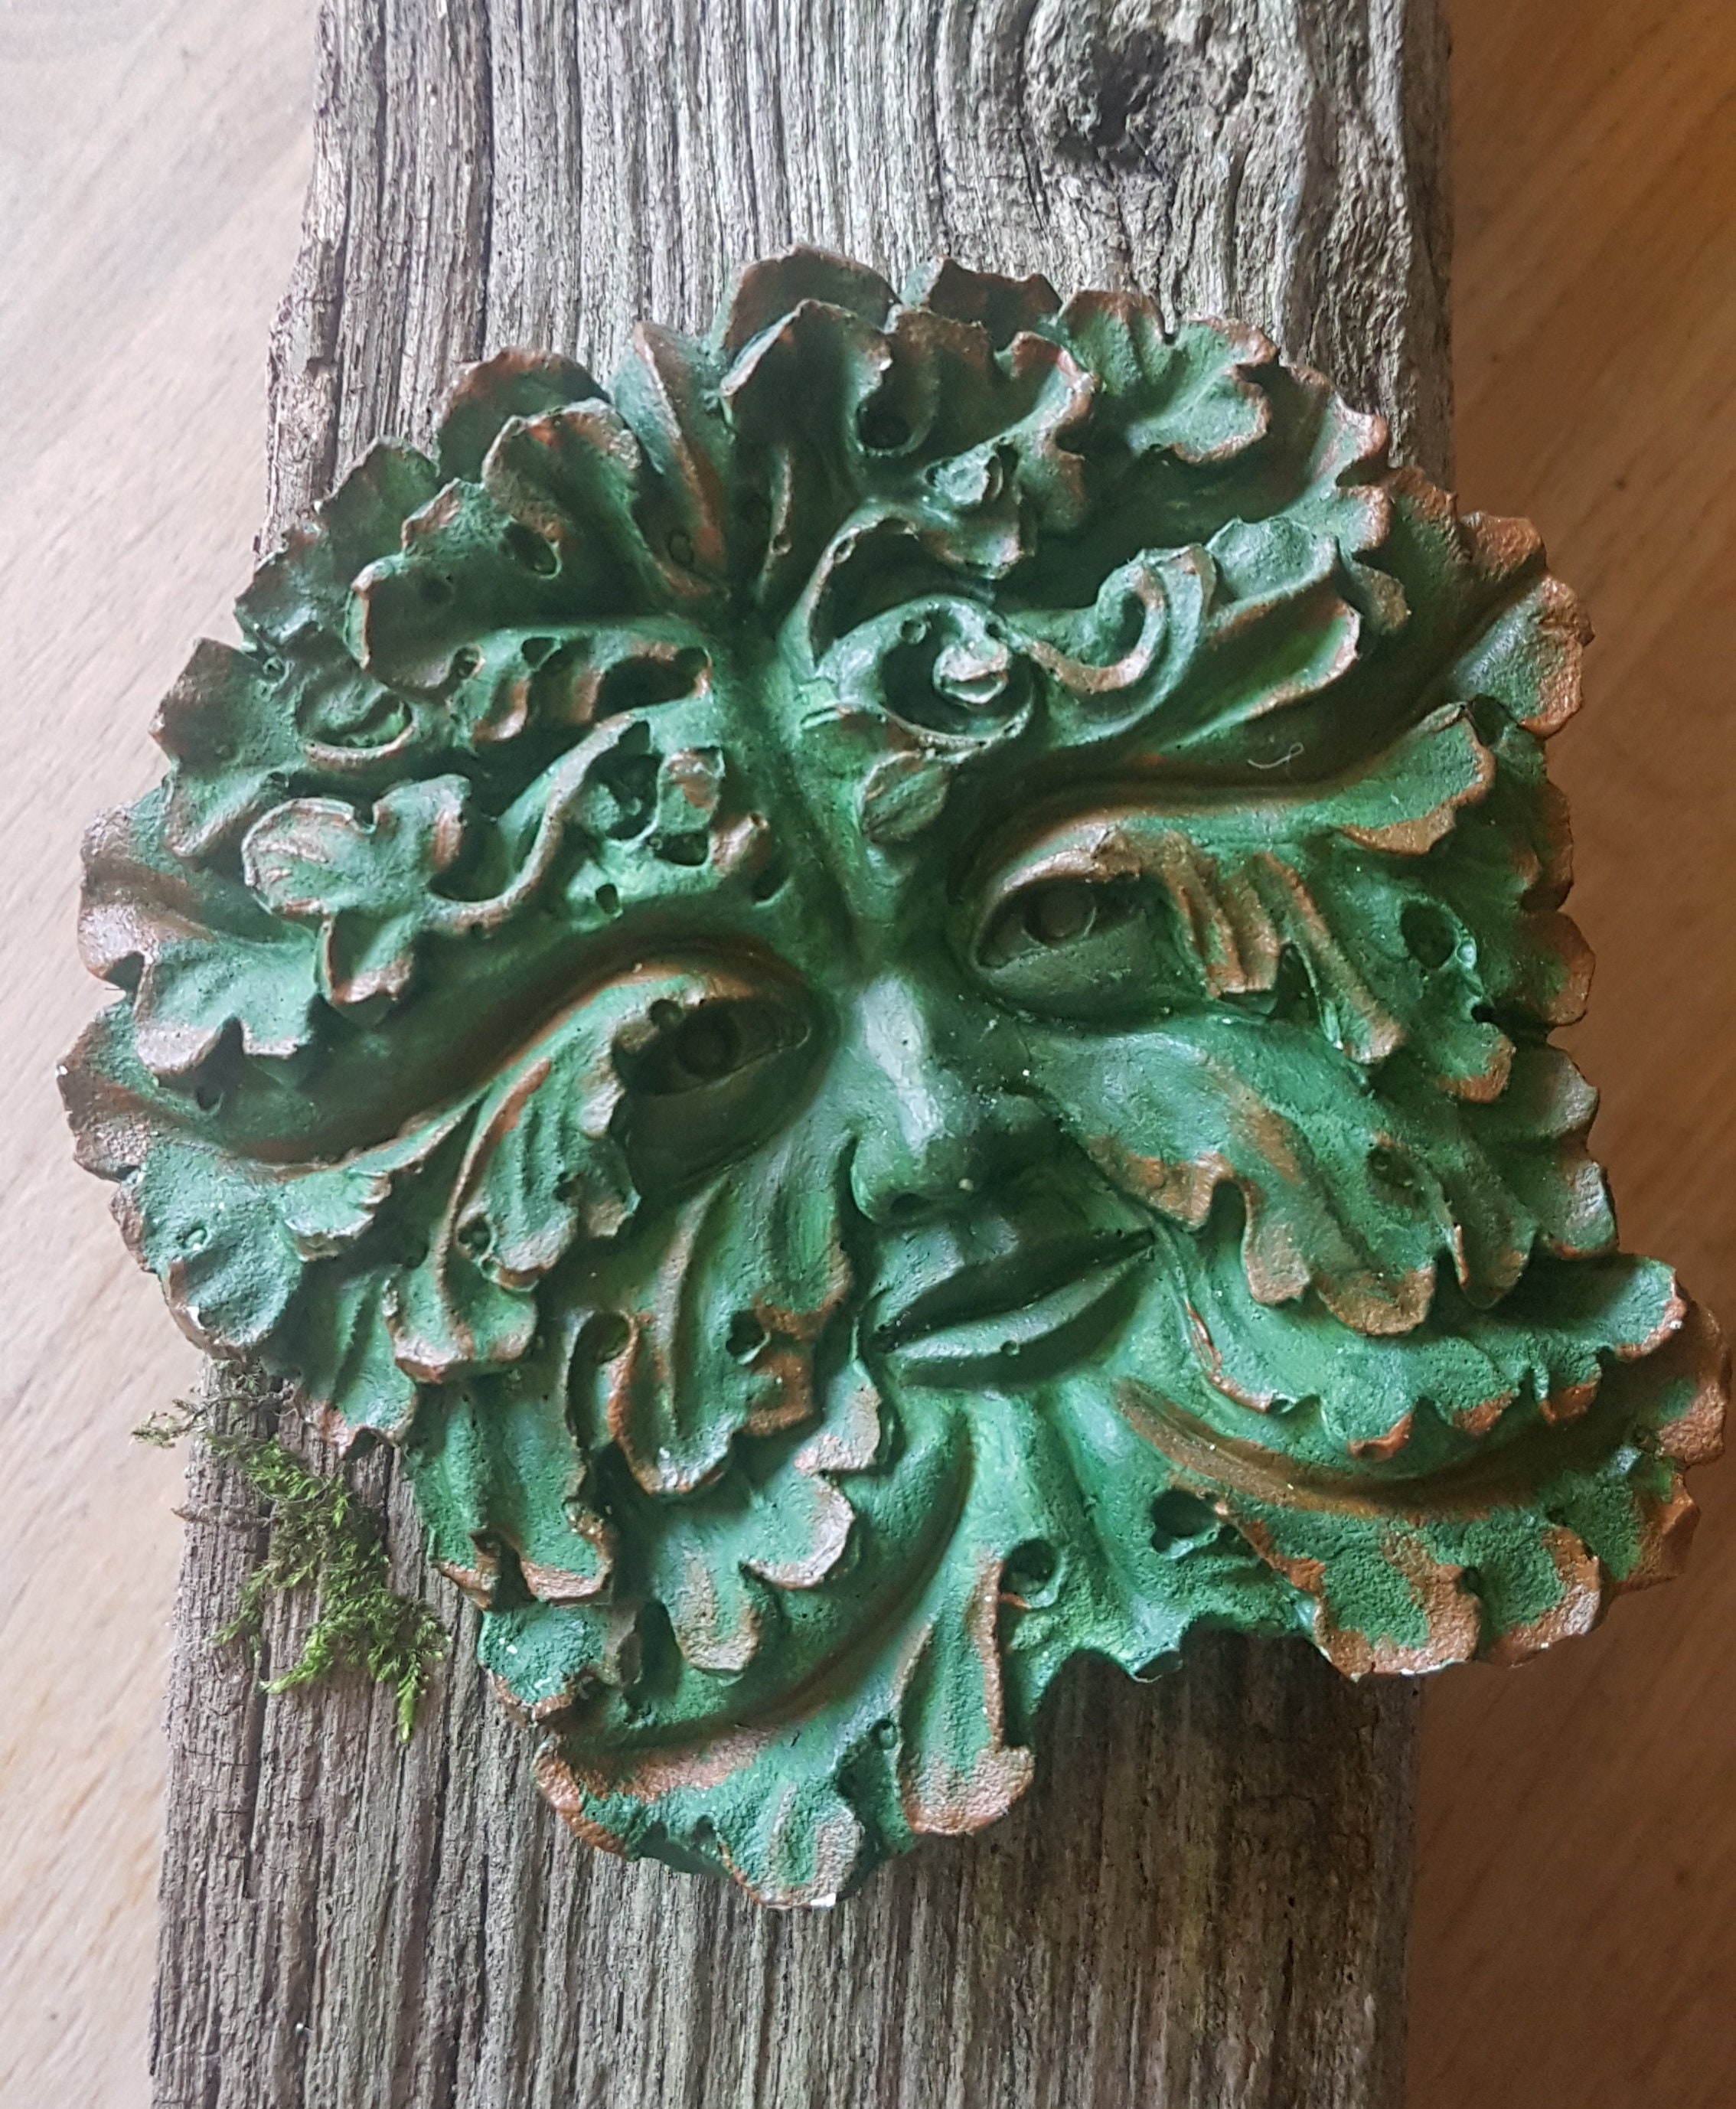 Hand geschnitzt Holz heidnischen Greenman Wand Hängend Geschenk NEU